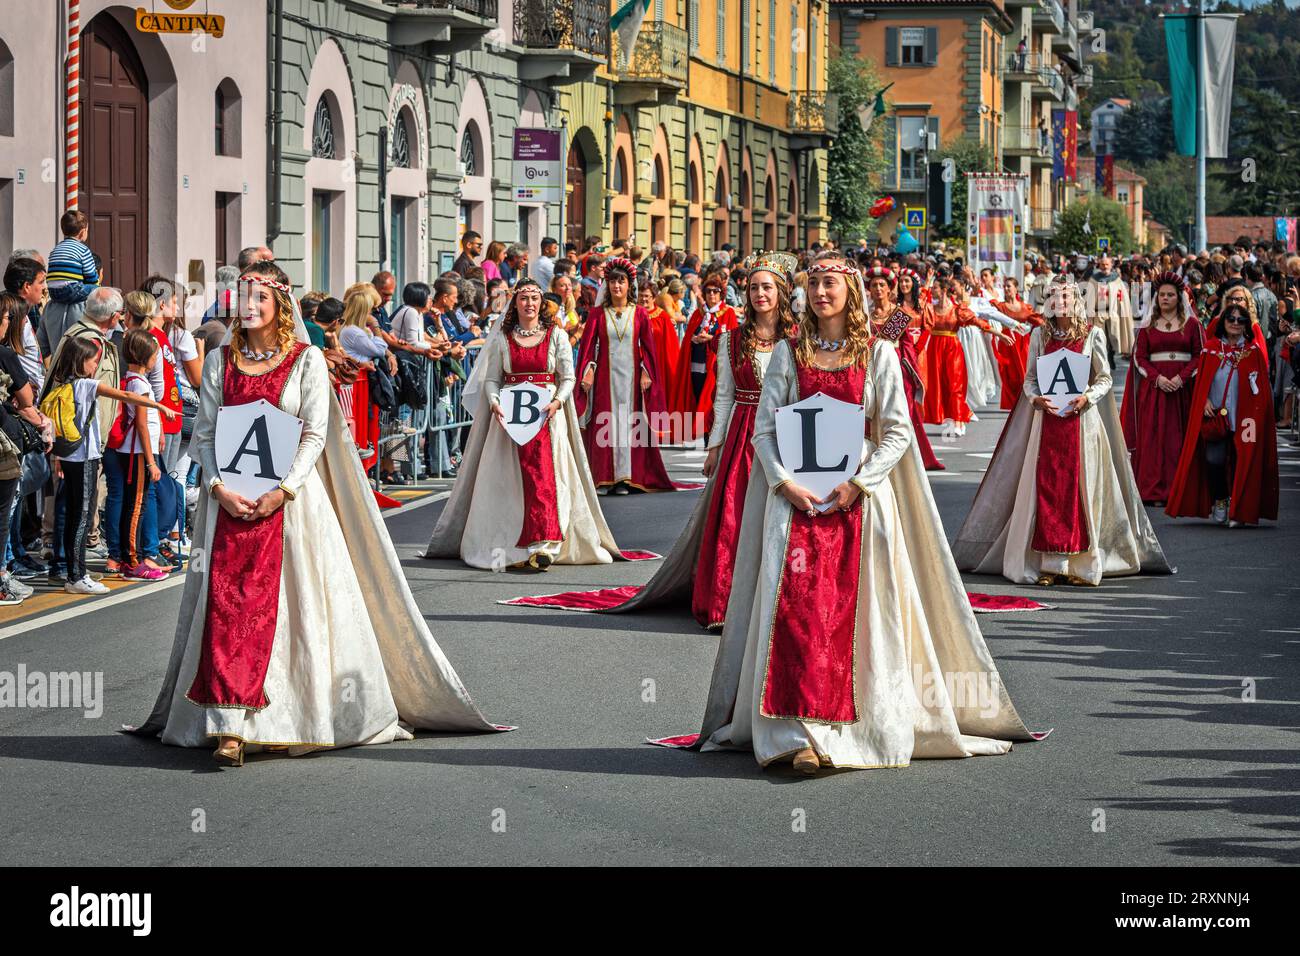 Processione in abiti storici alla Parata medievale - parte tradizionale delle celebrazioni durante l'annuale festival del Tartufo bianco ad Alba, Italia. Foto Stock